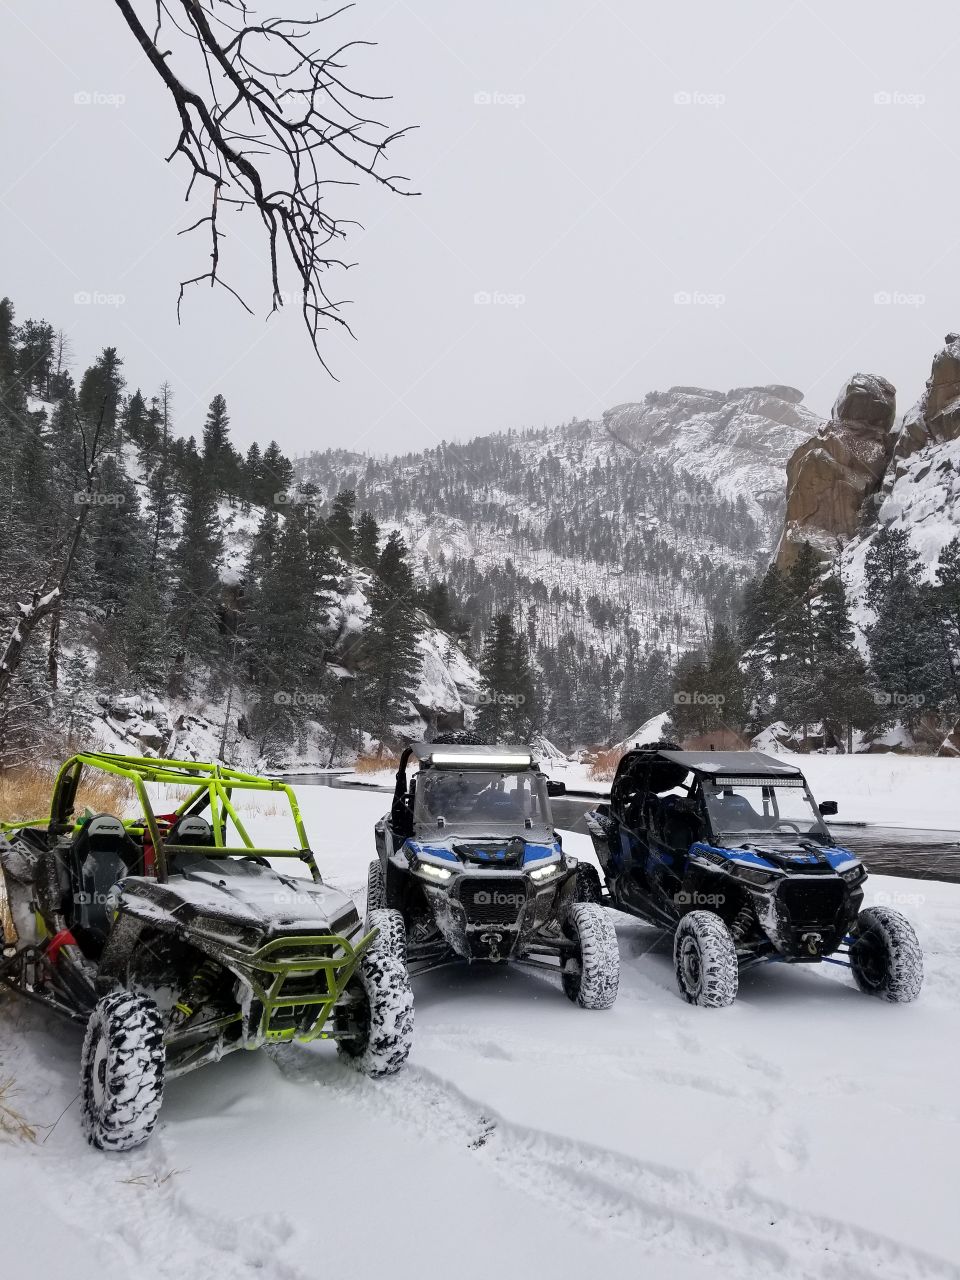 Snow fun in the Rockies 